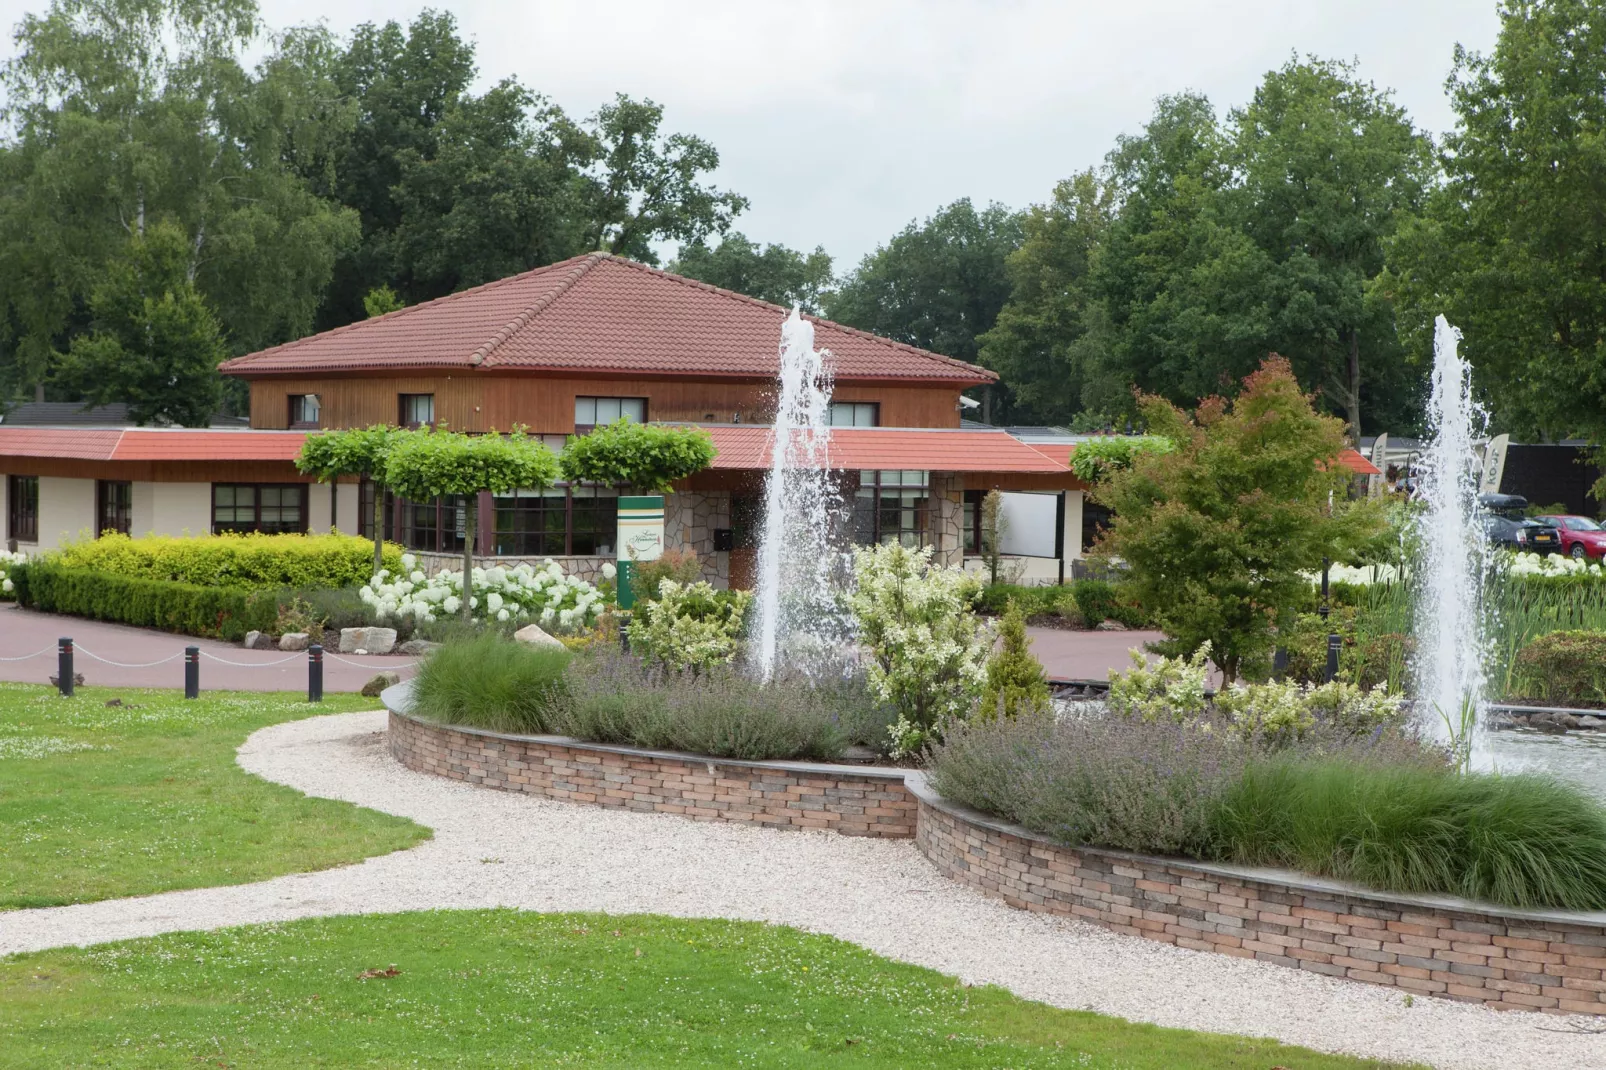 Resort Limburg 21-Parkfaciliteiten